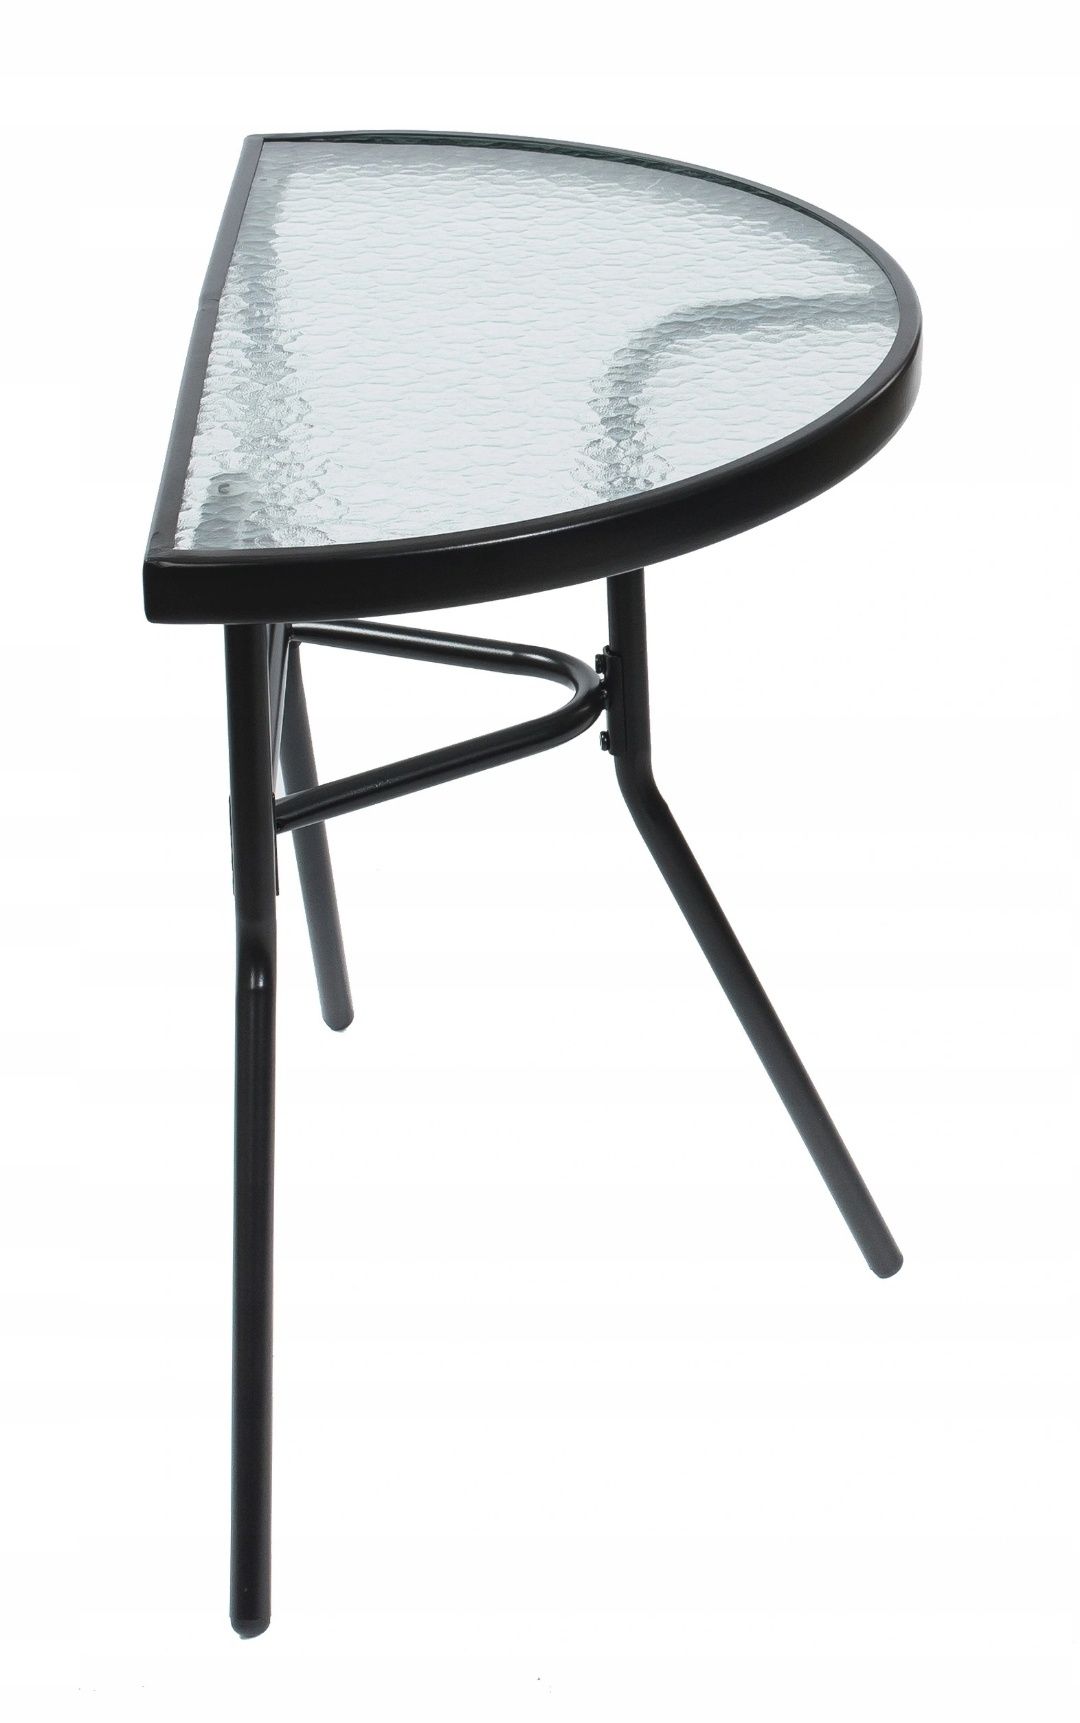 Meble balkonowe stół szklany i krzesło czarne ogród OKAZJA GWARANCJA